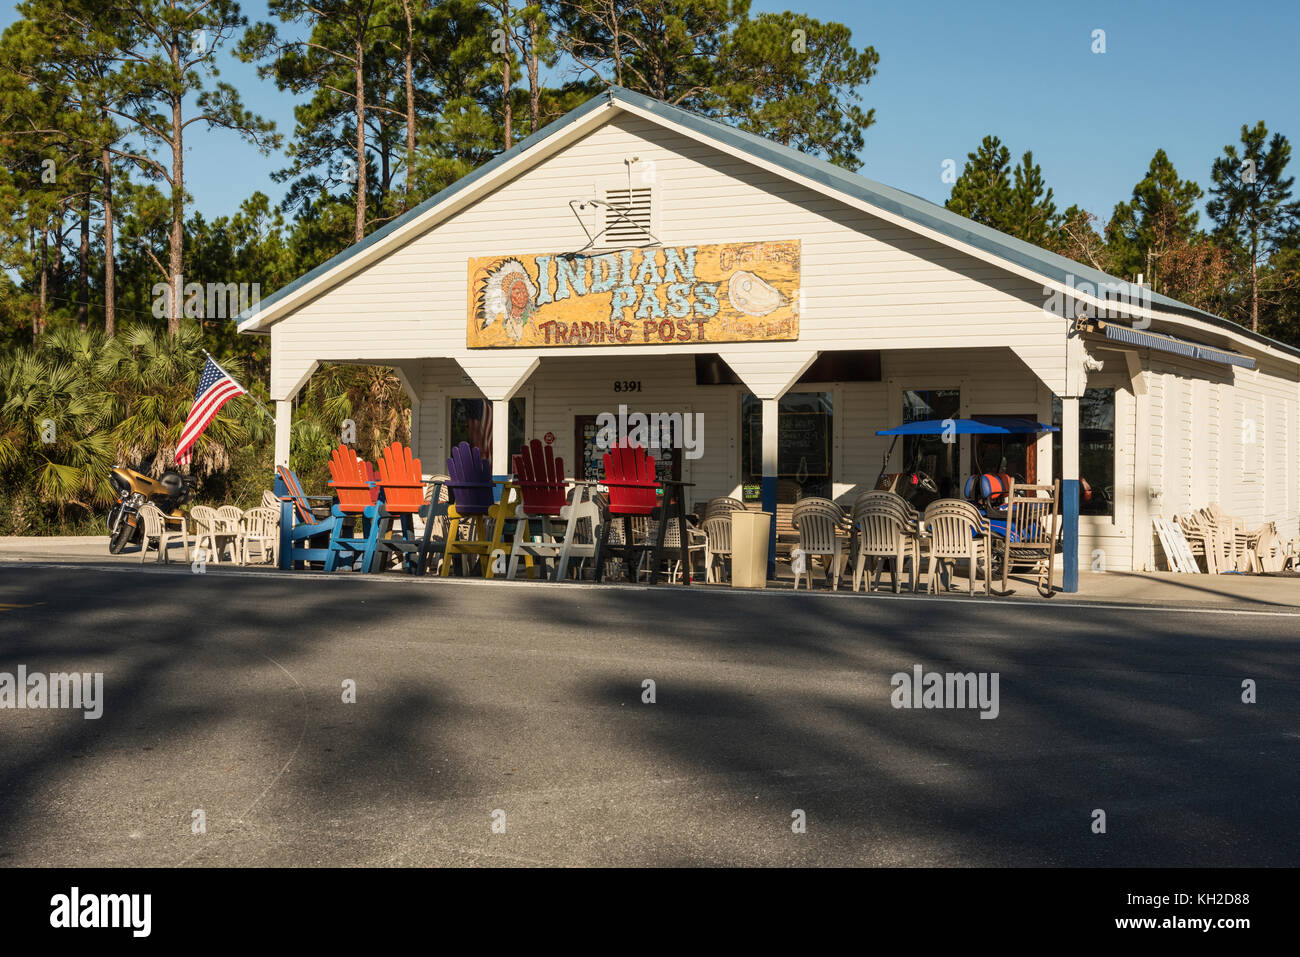 Indian Pass Raw Bar in Port Saint Joe, Florida Foto Stock